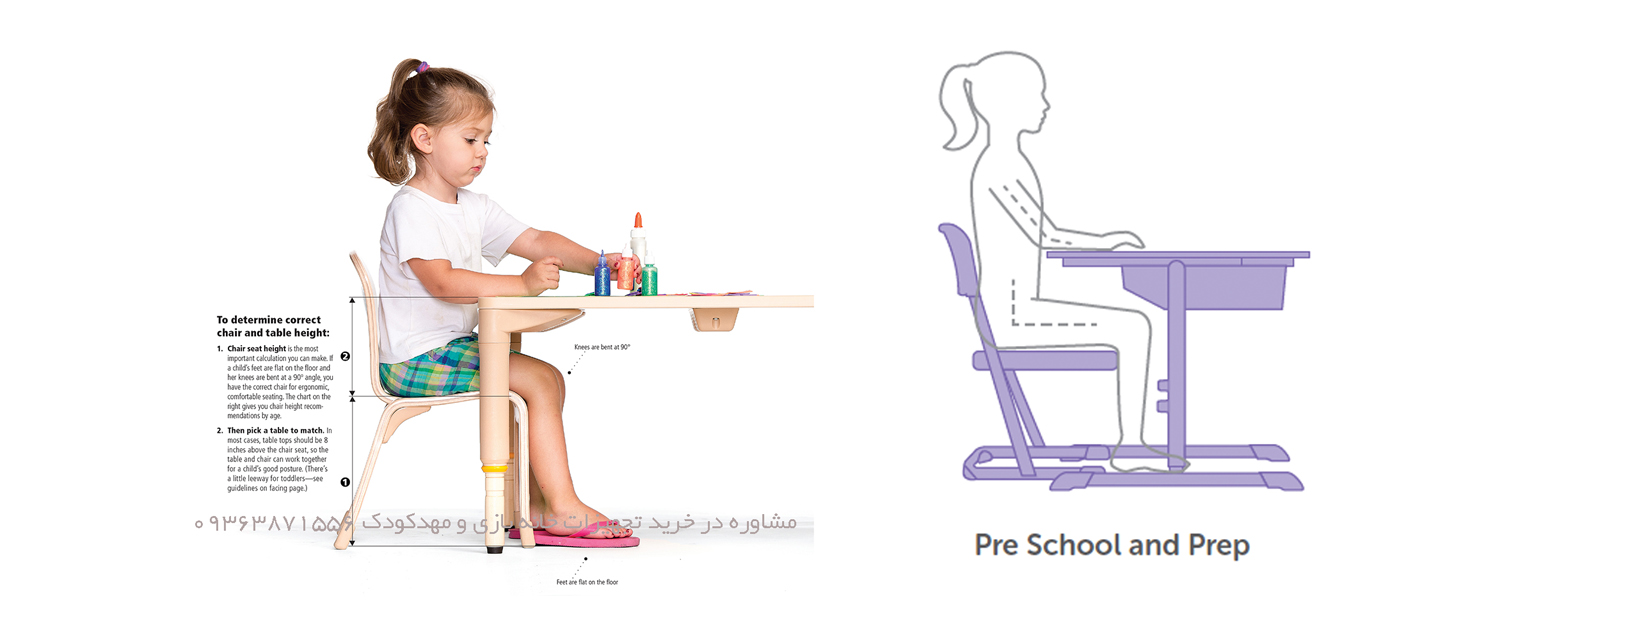 راهنمای خرید میز و صندلی کودک